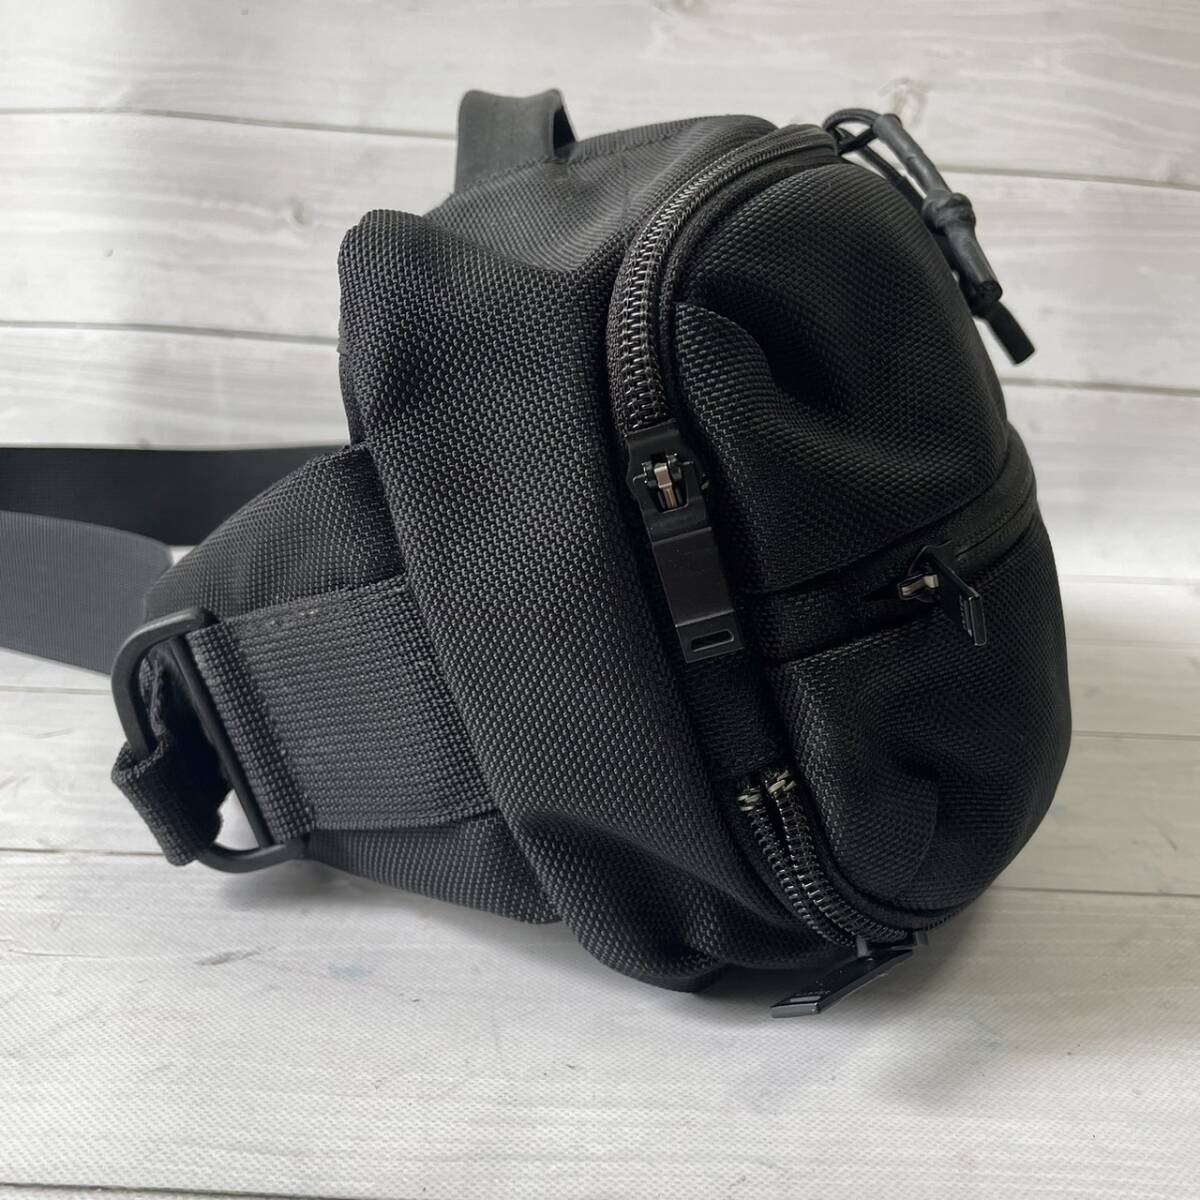 [ не использовался класс ] Porter PORTER Yoshida bag выше боковой sling сумка на плечо 2way черный чёрный нейлон наклонный .. вышивка Logo мужской сумка 